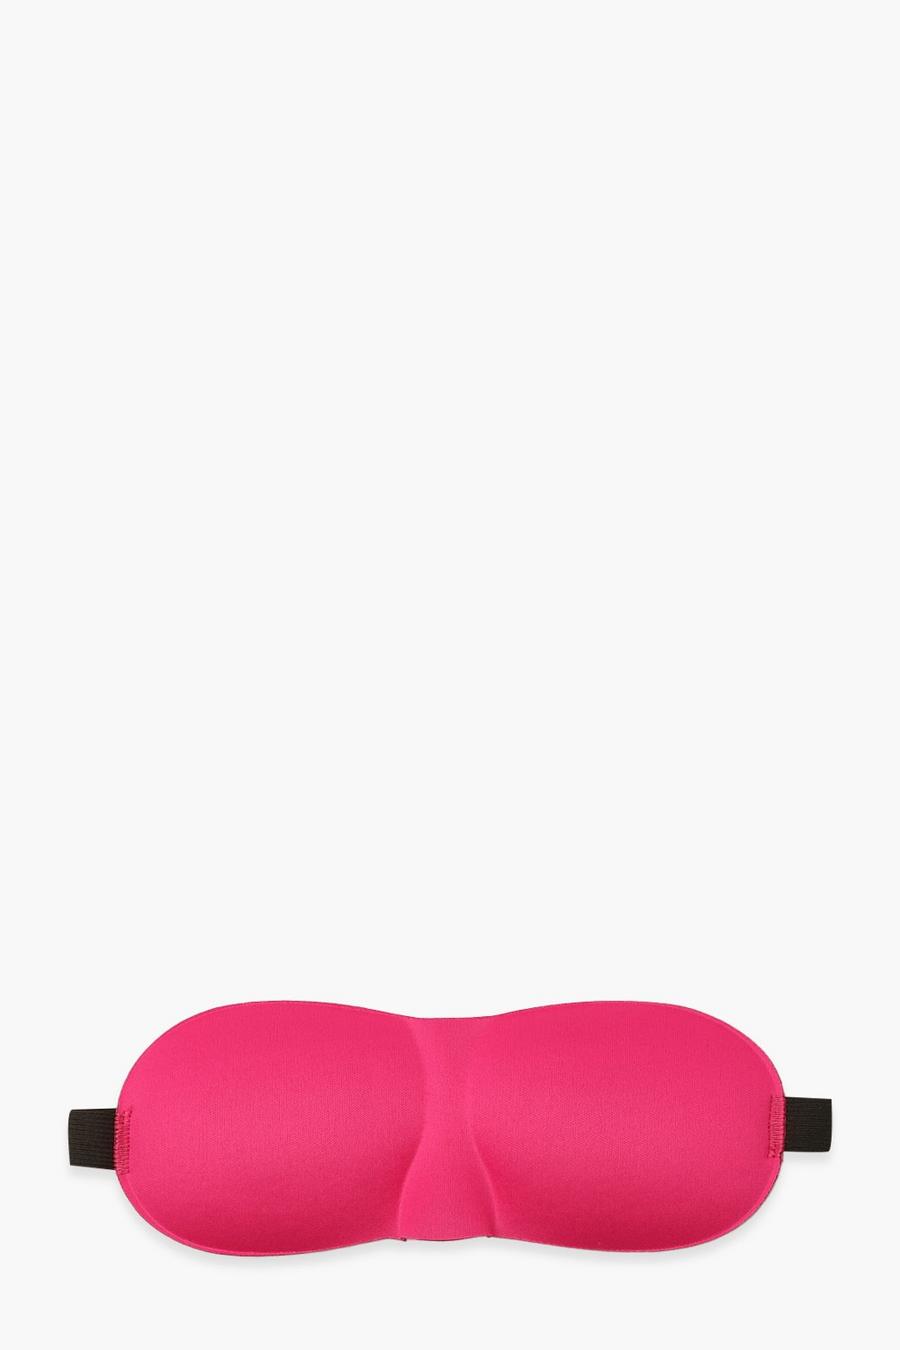 Masque de sommeil imprimé cils, Hot pink image number 1